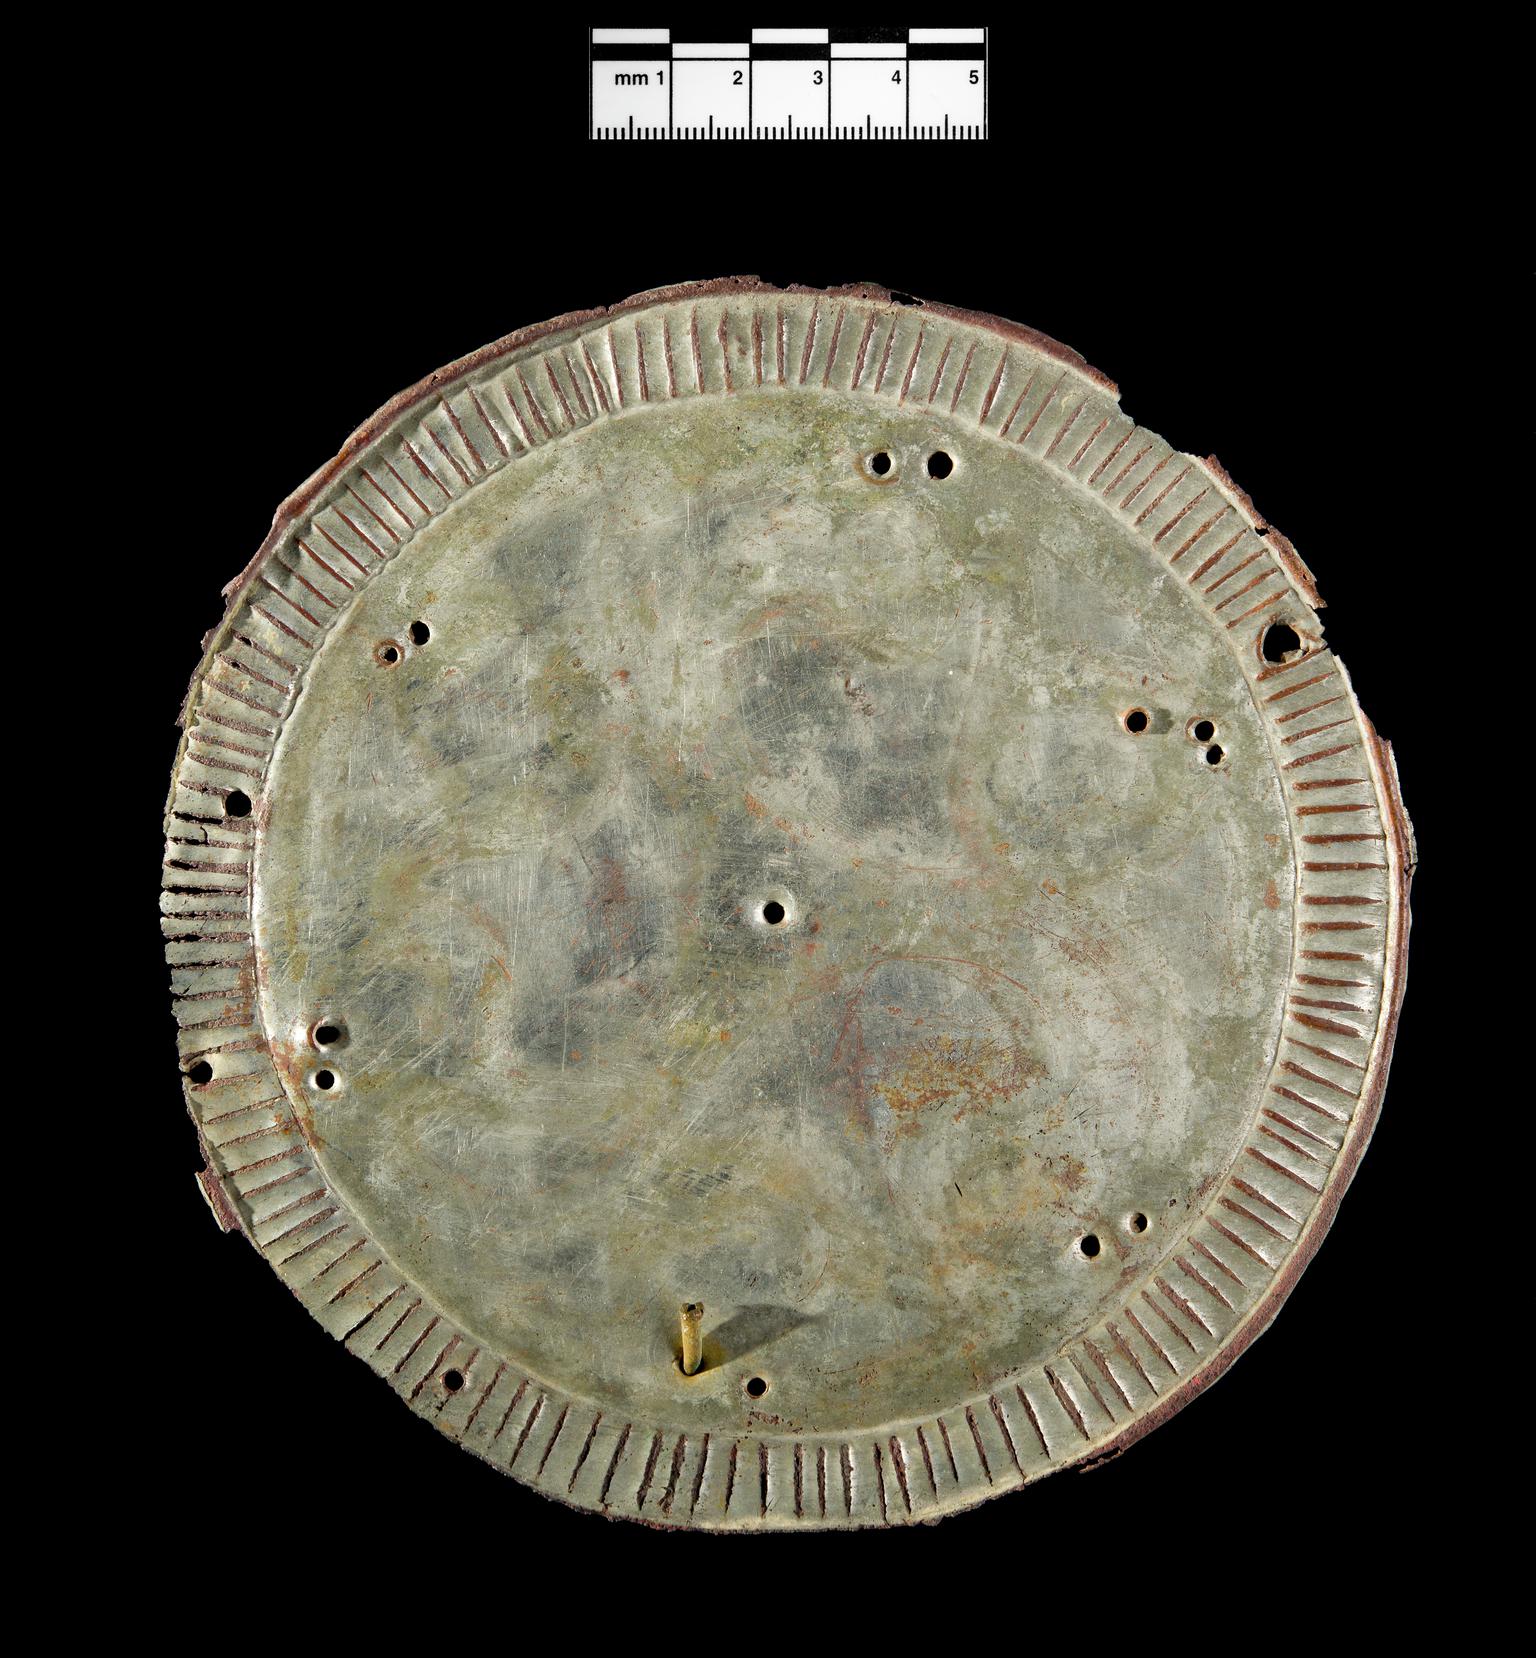 Late Iron Age / Roman copper alloy ornamental disc